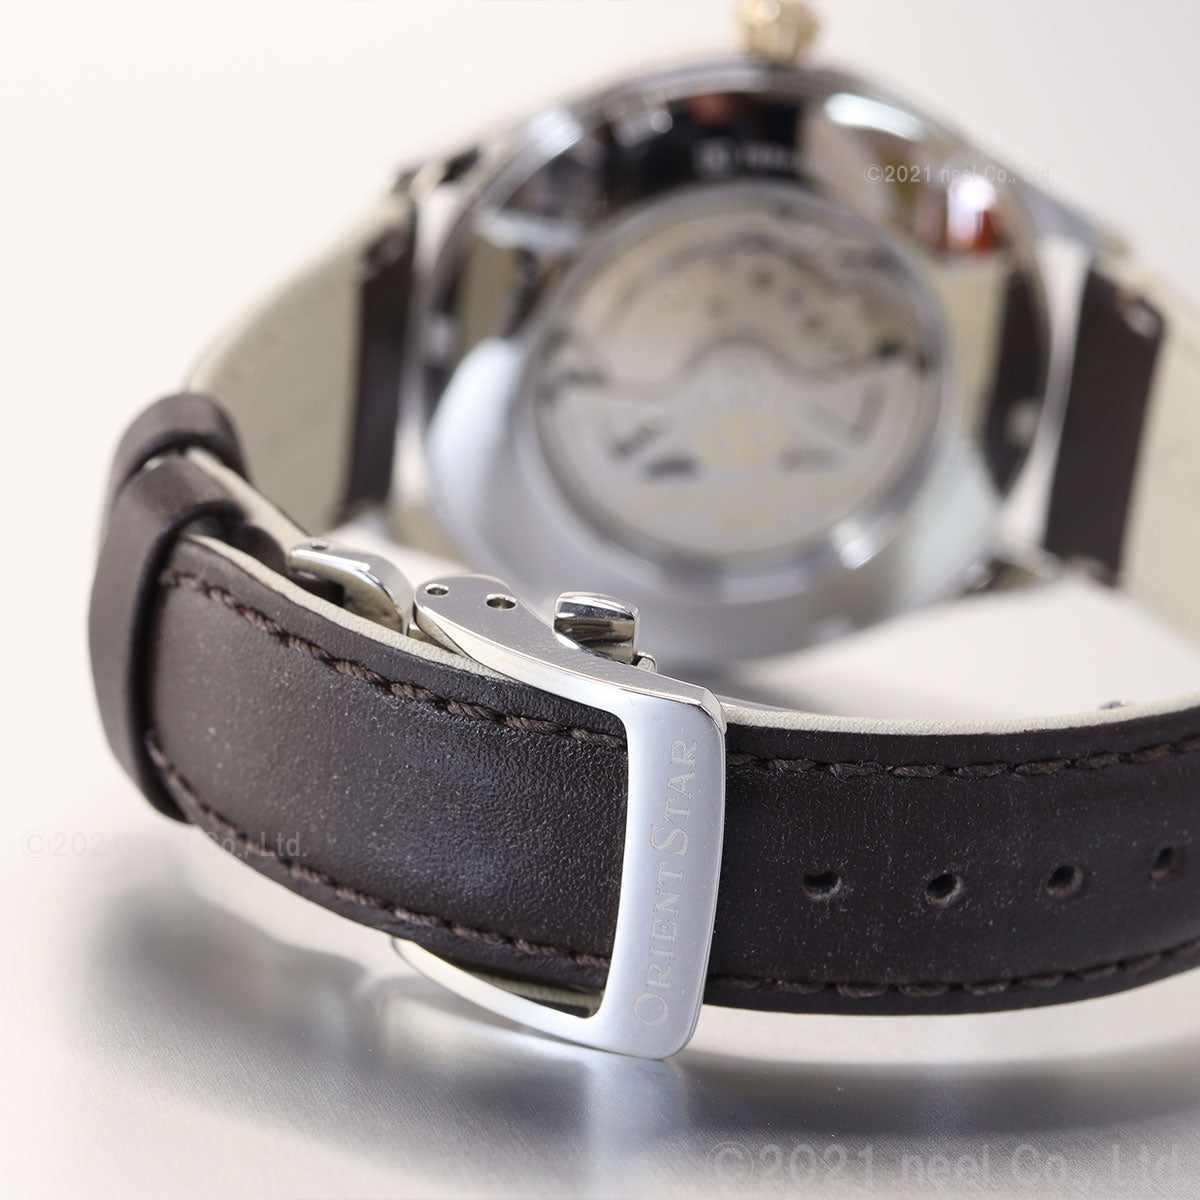 オリエントスター ORIENT STAR 腕時計 メンズ 自動巻き 機械式 クラシック CLASSIC クラシックセミスケルトン RK-AT0201G